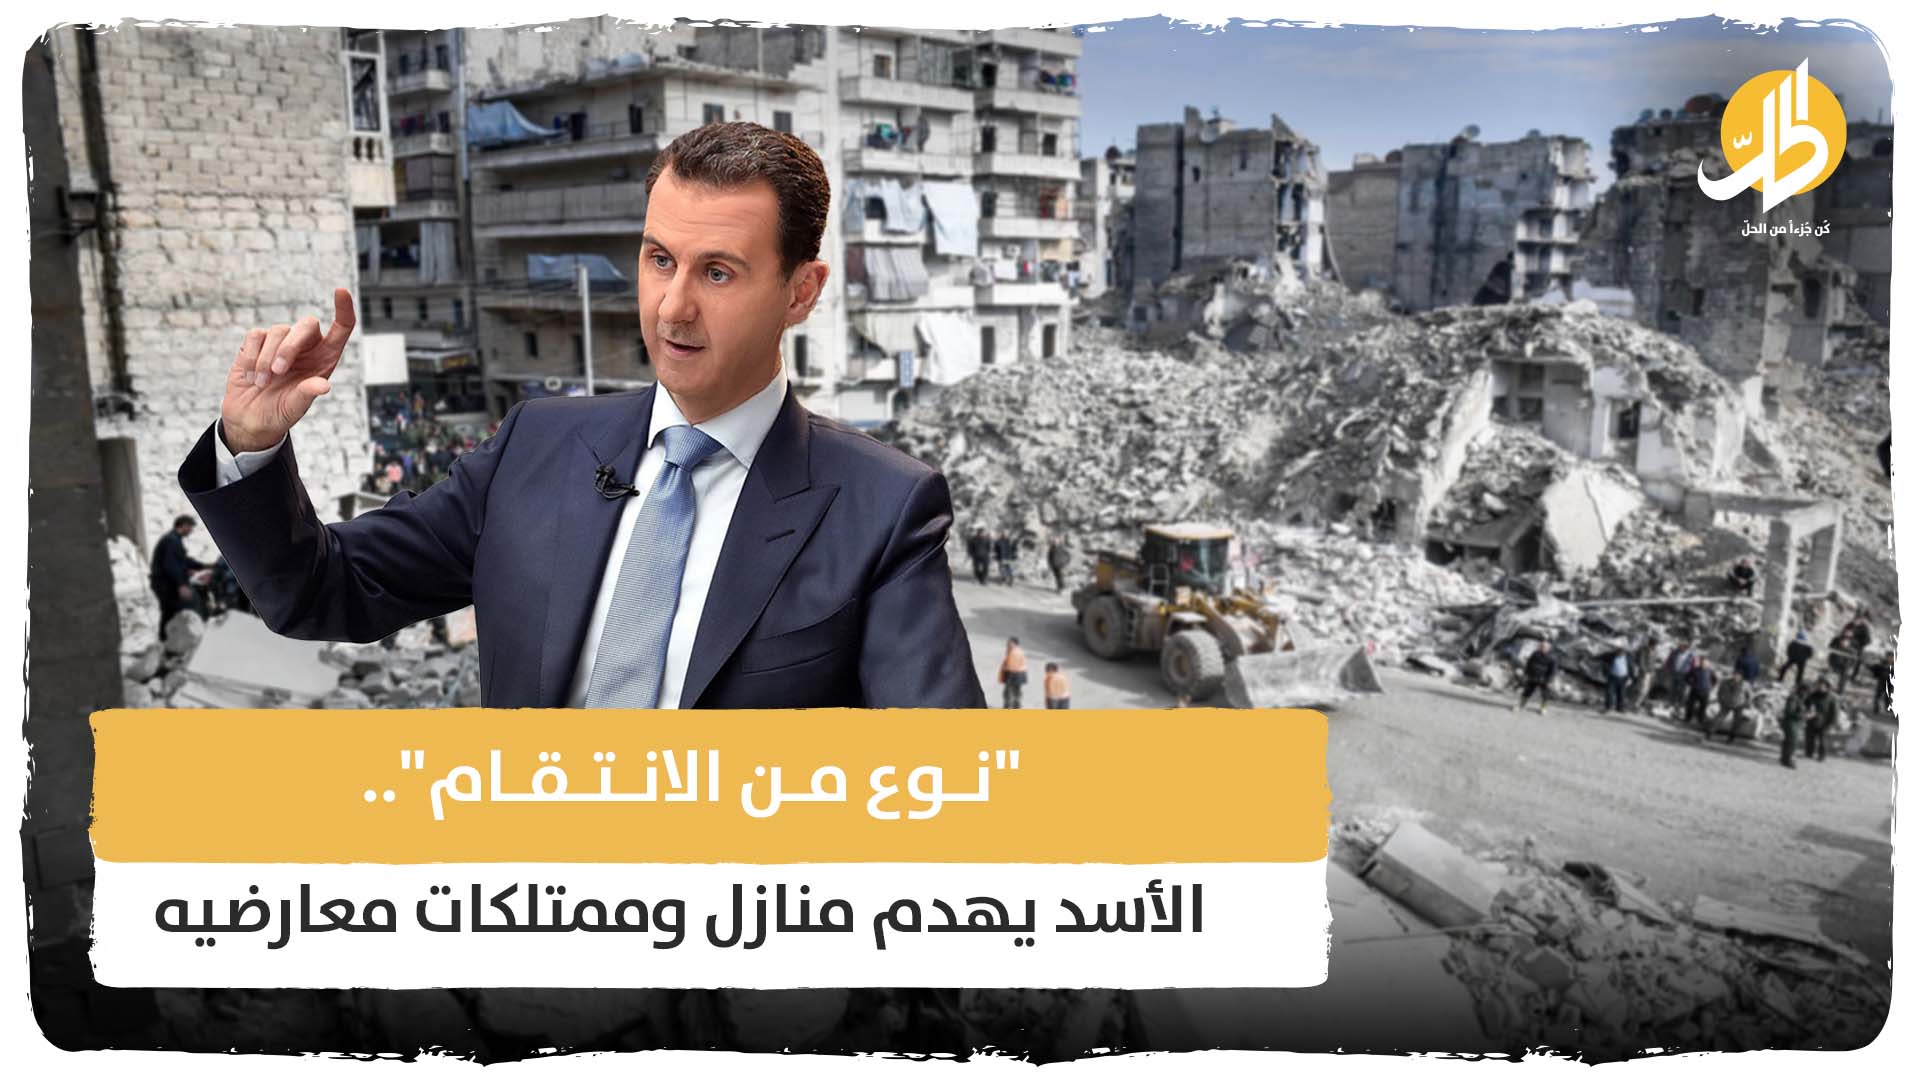 “نوع من الانتقام”.. الأسد يهدم منازل وممتلكات معارضيه